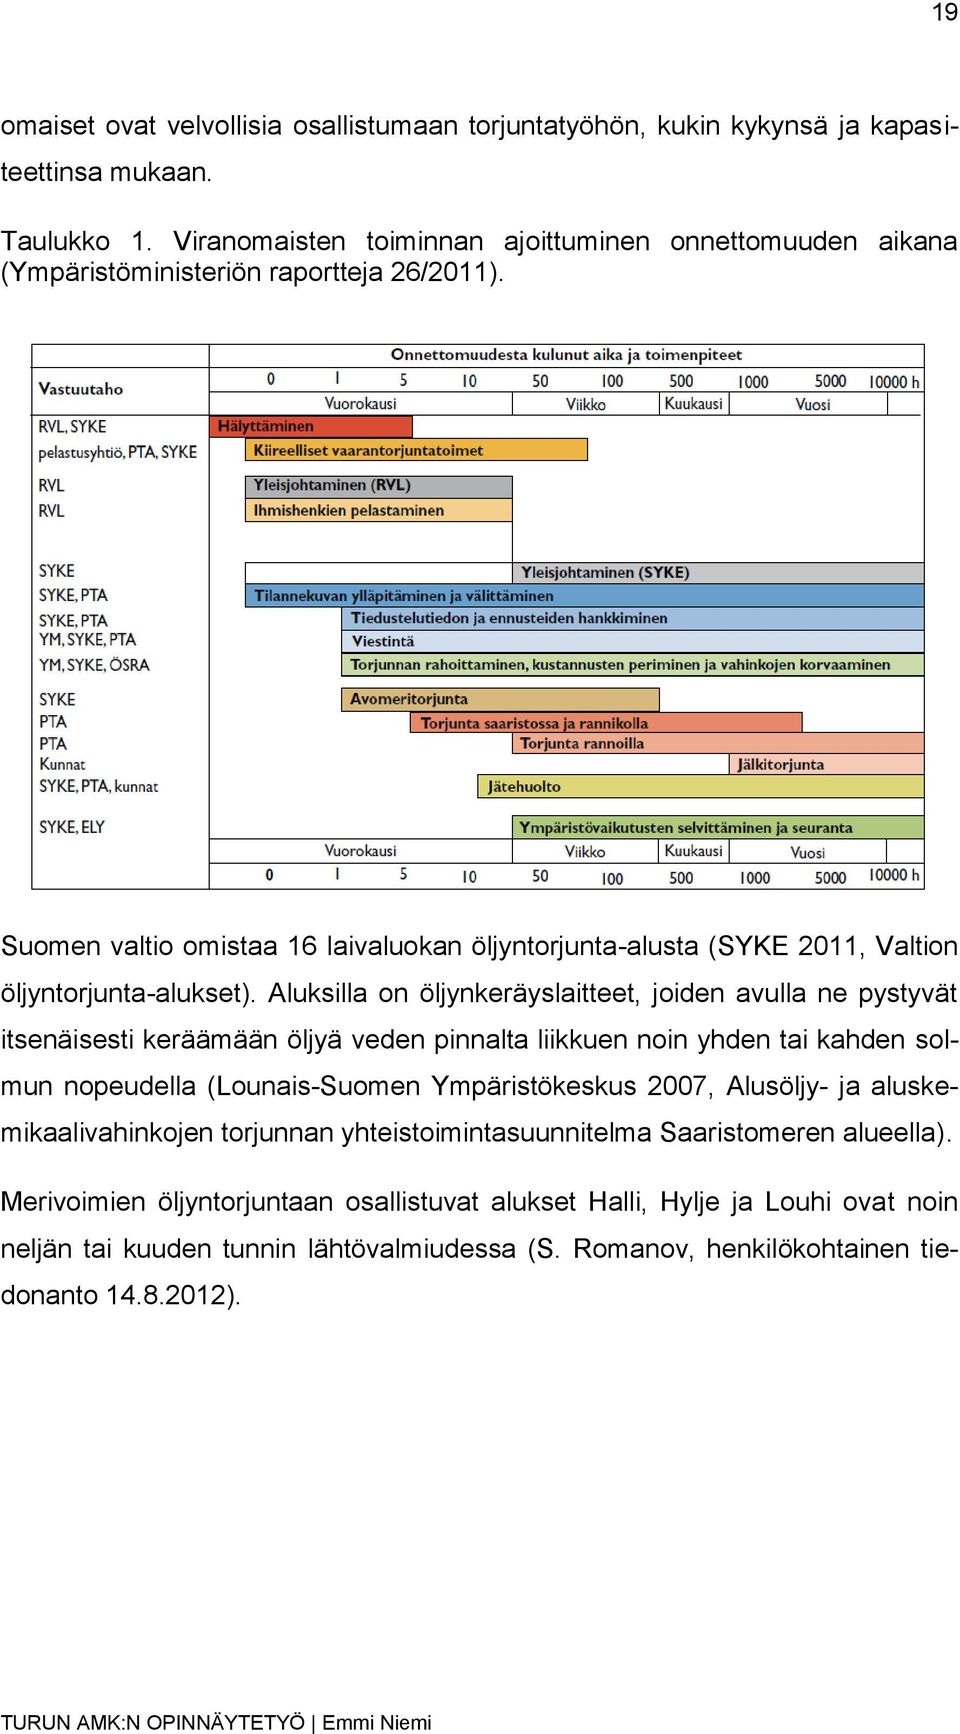 Suomen valtio omistaa 16 laivaluokan öljyntorjunta-alusta (SYKE 2011, Valtion öljyntorjunta-alukset).